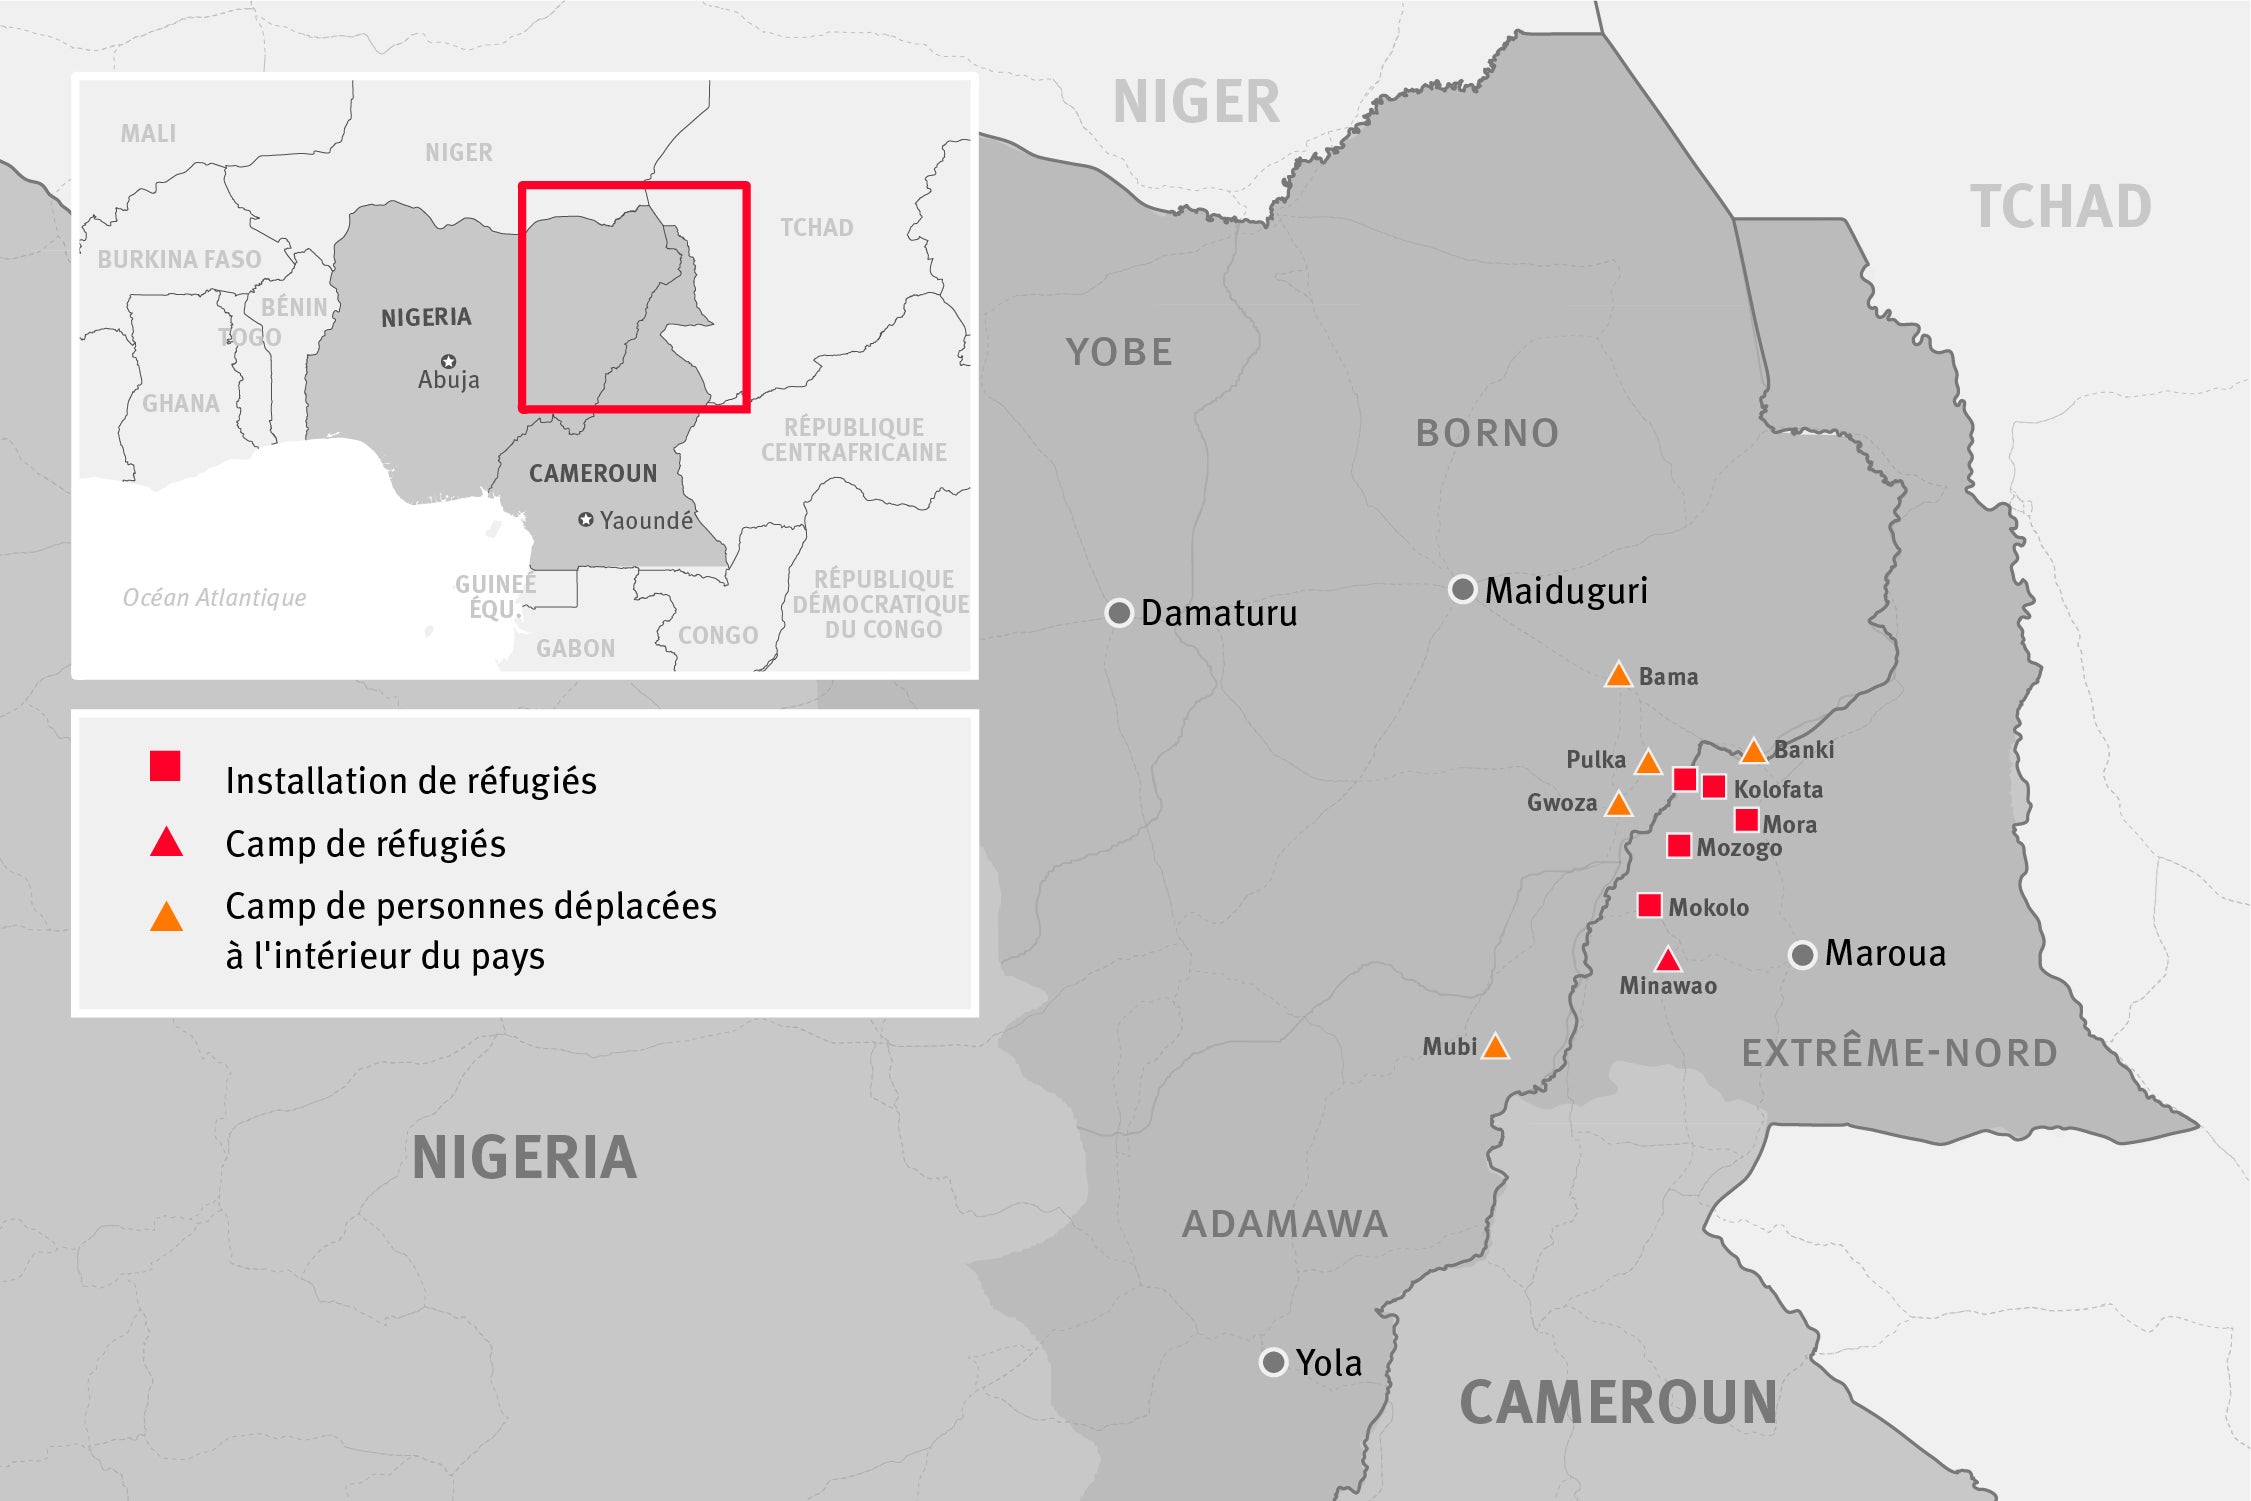 Carte de certains camps de réfugiés, installations de réfugiés et camps de déplacés internes dans les zones frontalières entre le Cameroun et le Nigeria